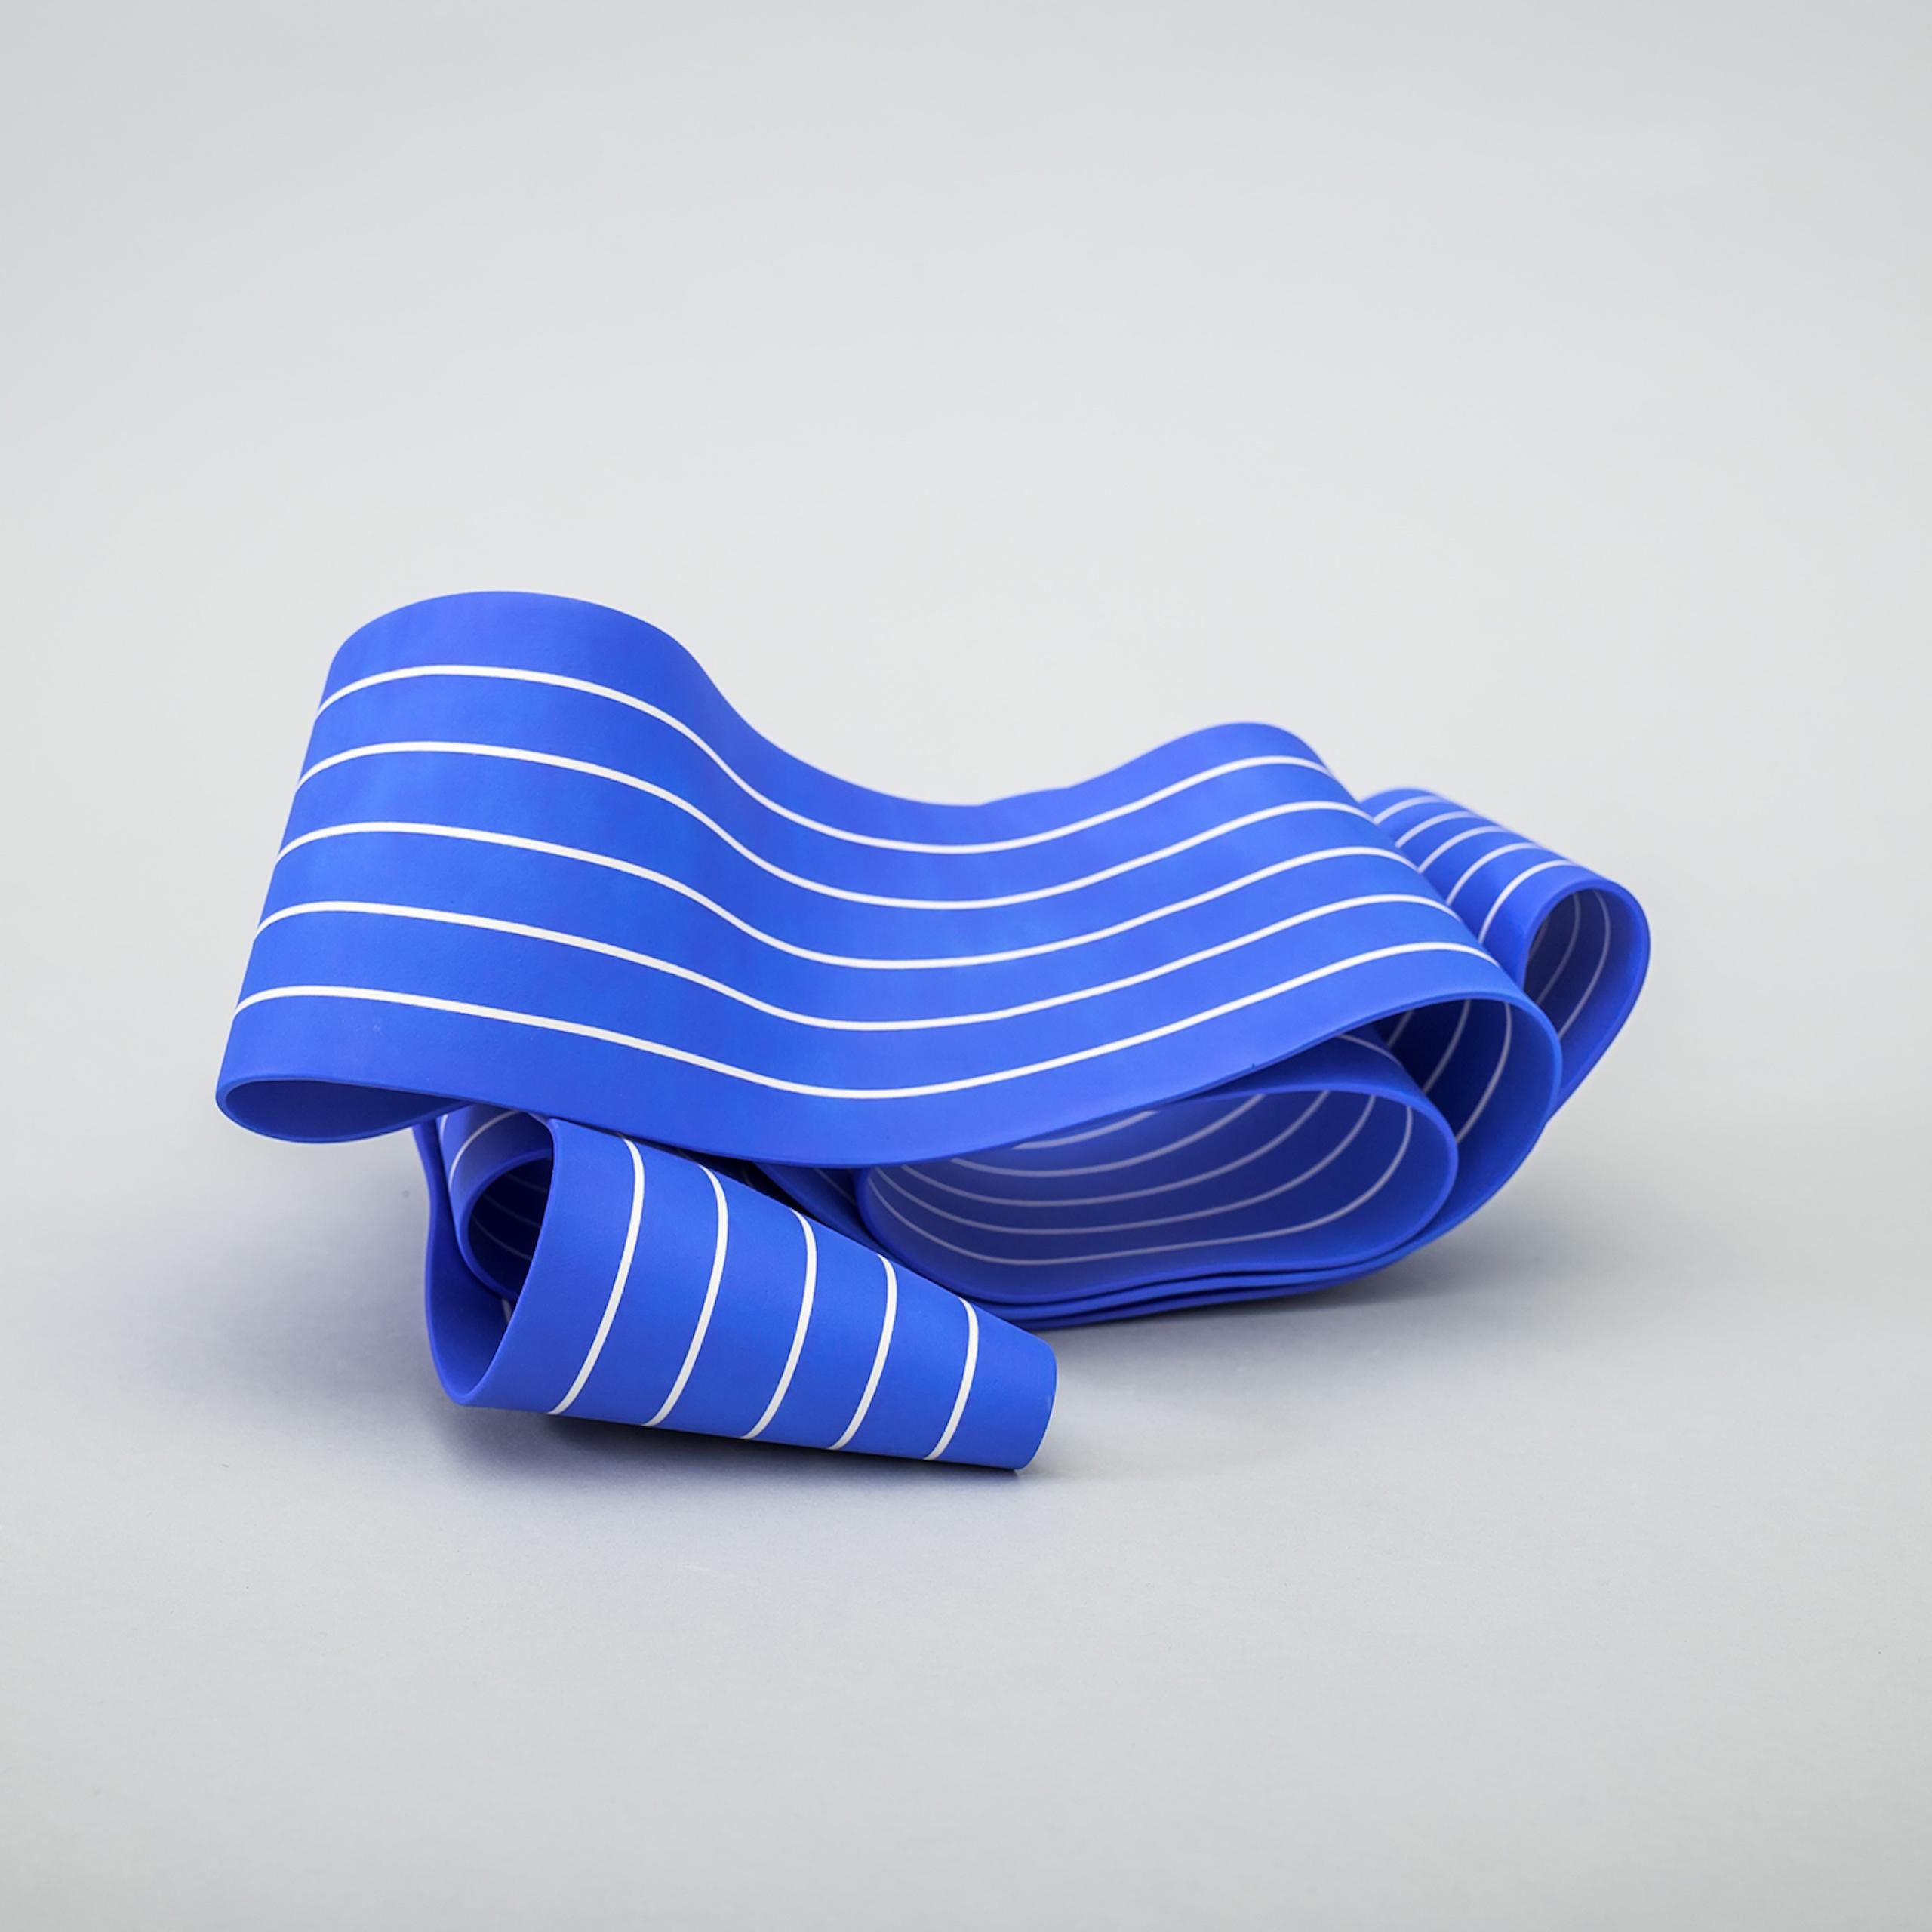 Entrapped 4 by Simcha Even-Chen - porcelain sculpture, blue For Sale 1